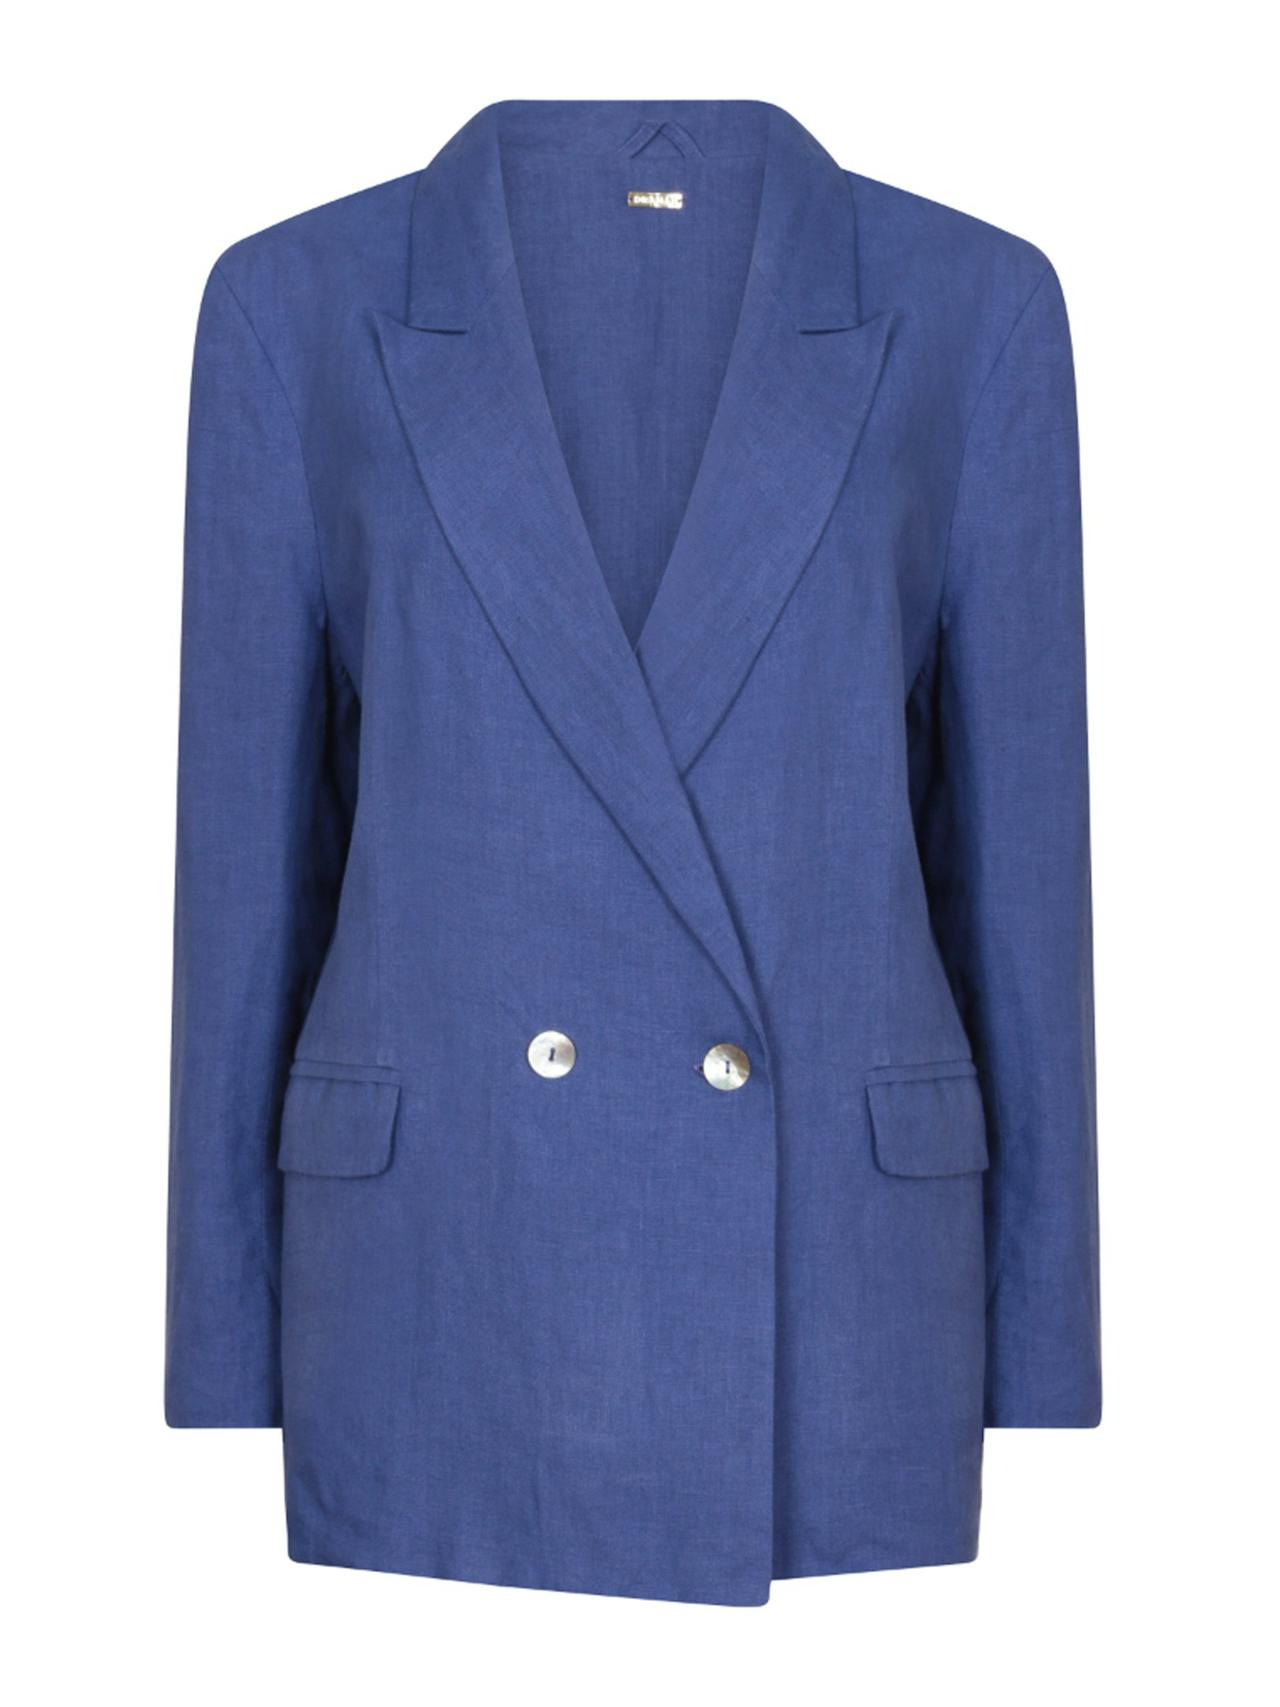 Klein blue Nomade suit jacket